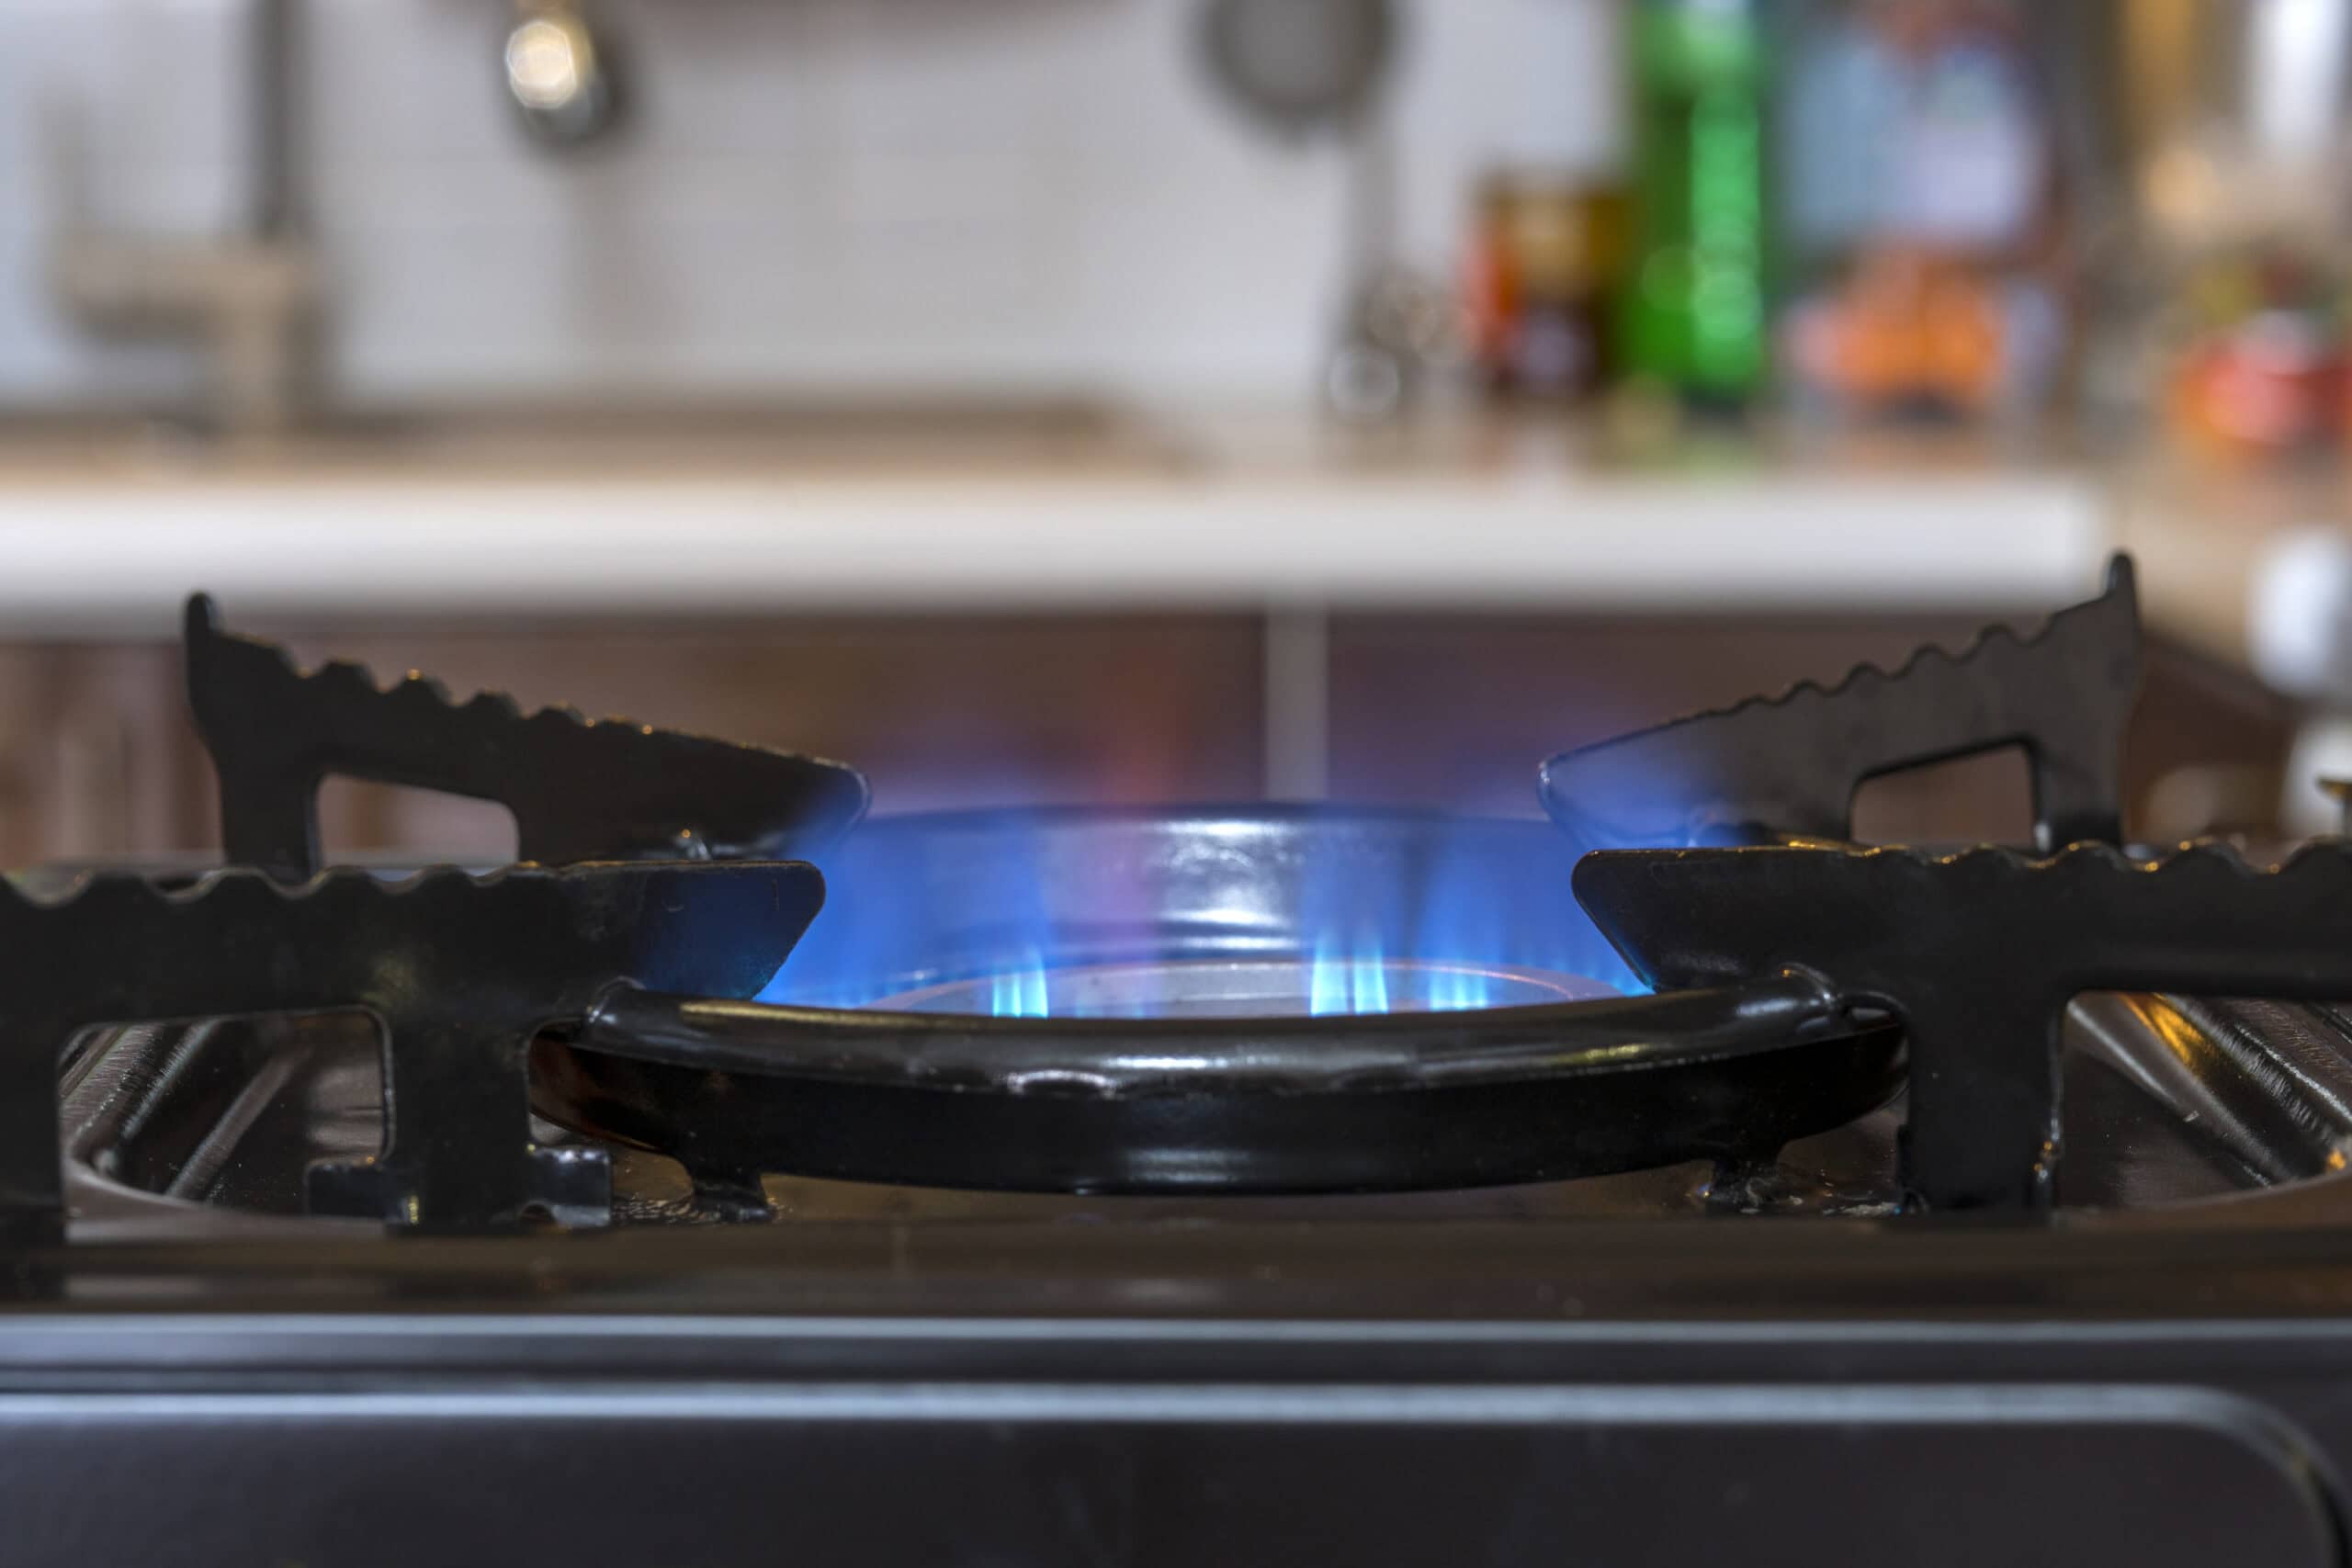 Por qué usar gas lp a domicilio por qué usar gas lp a domicilio - close up burning gas stove burner kitchen scaled - Por qué usar gas lp a domicilio